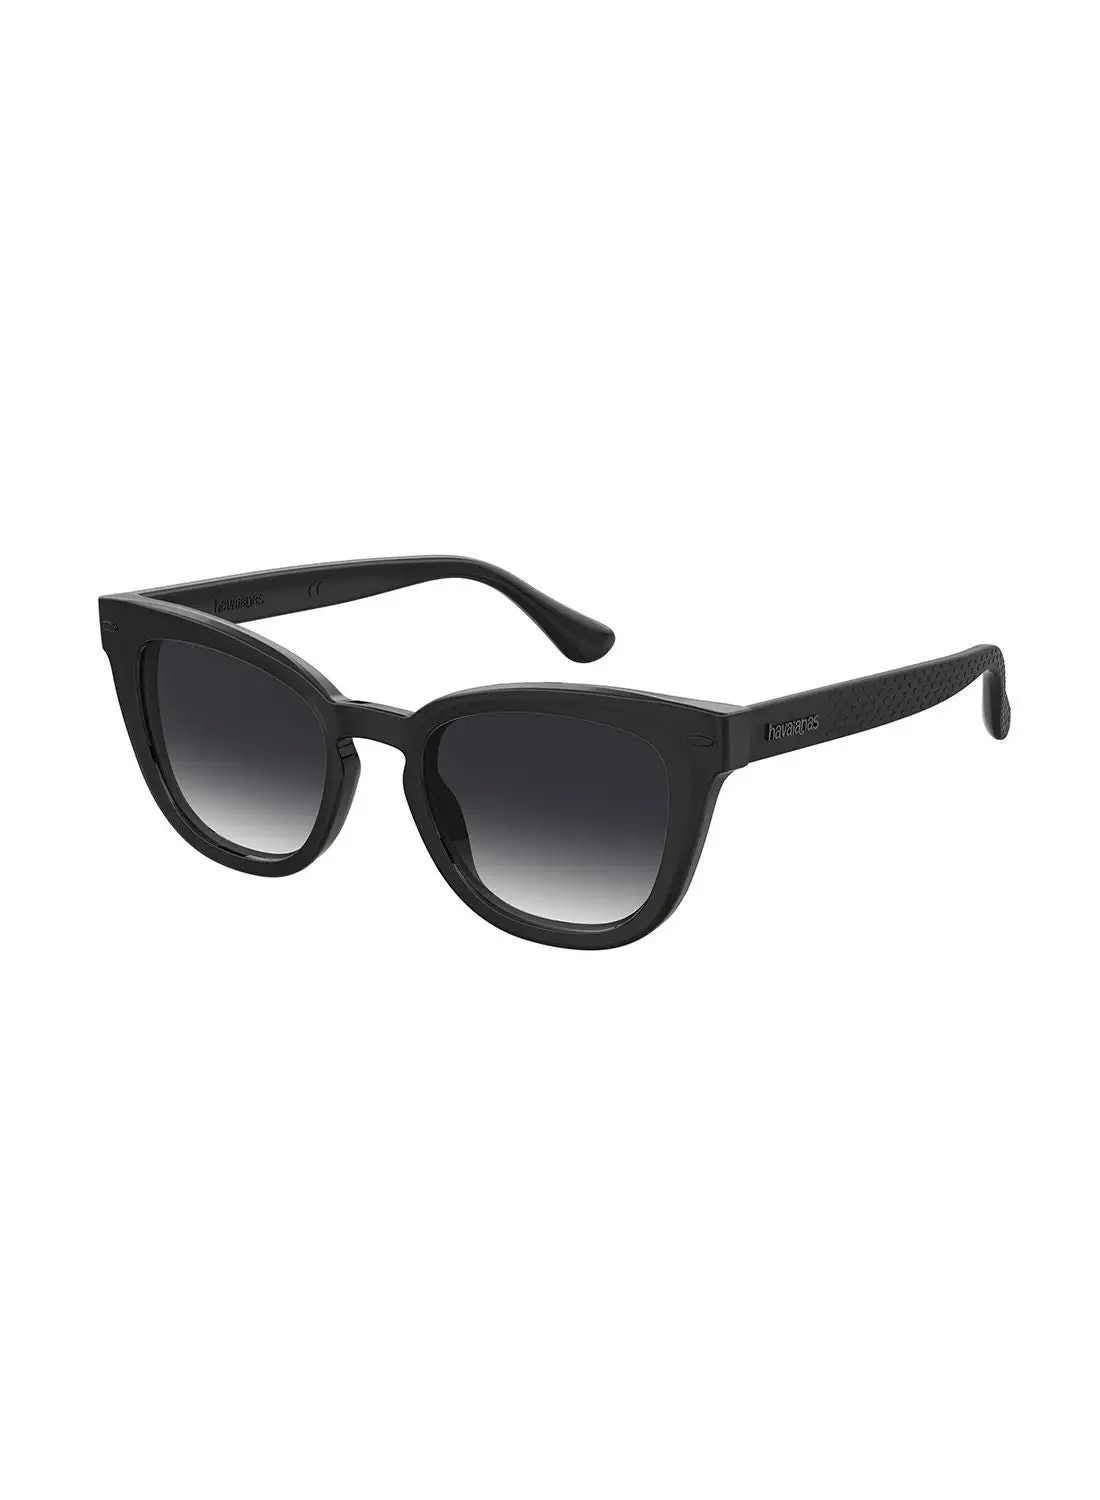 نظارة شمسية للنساء من هافاياناس للحماية من الأشعة فوق البنفسجية - روزا بلاك 51 - مقاس العدسة: 51 ملم